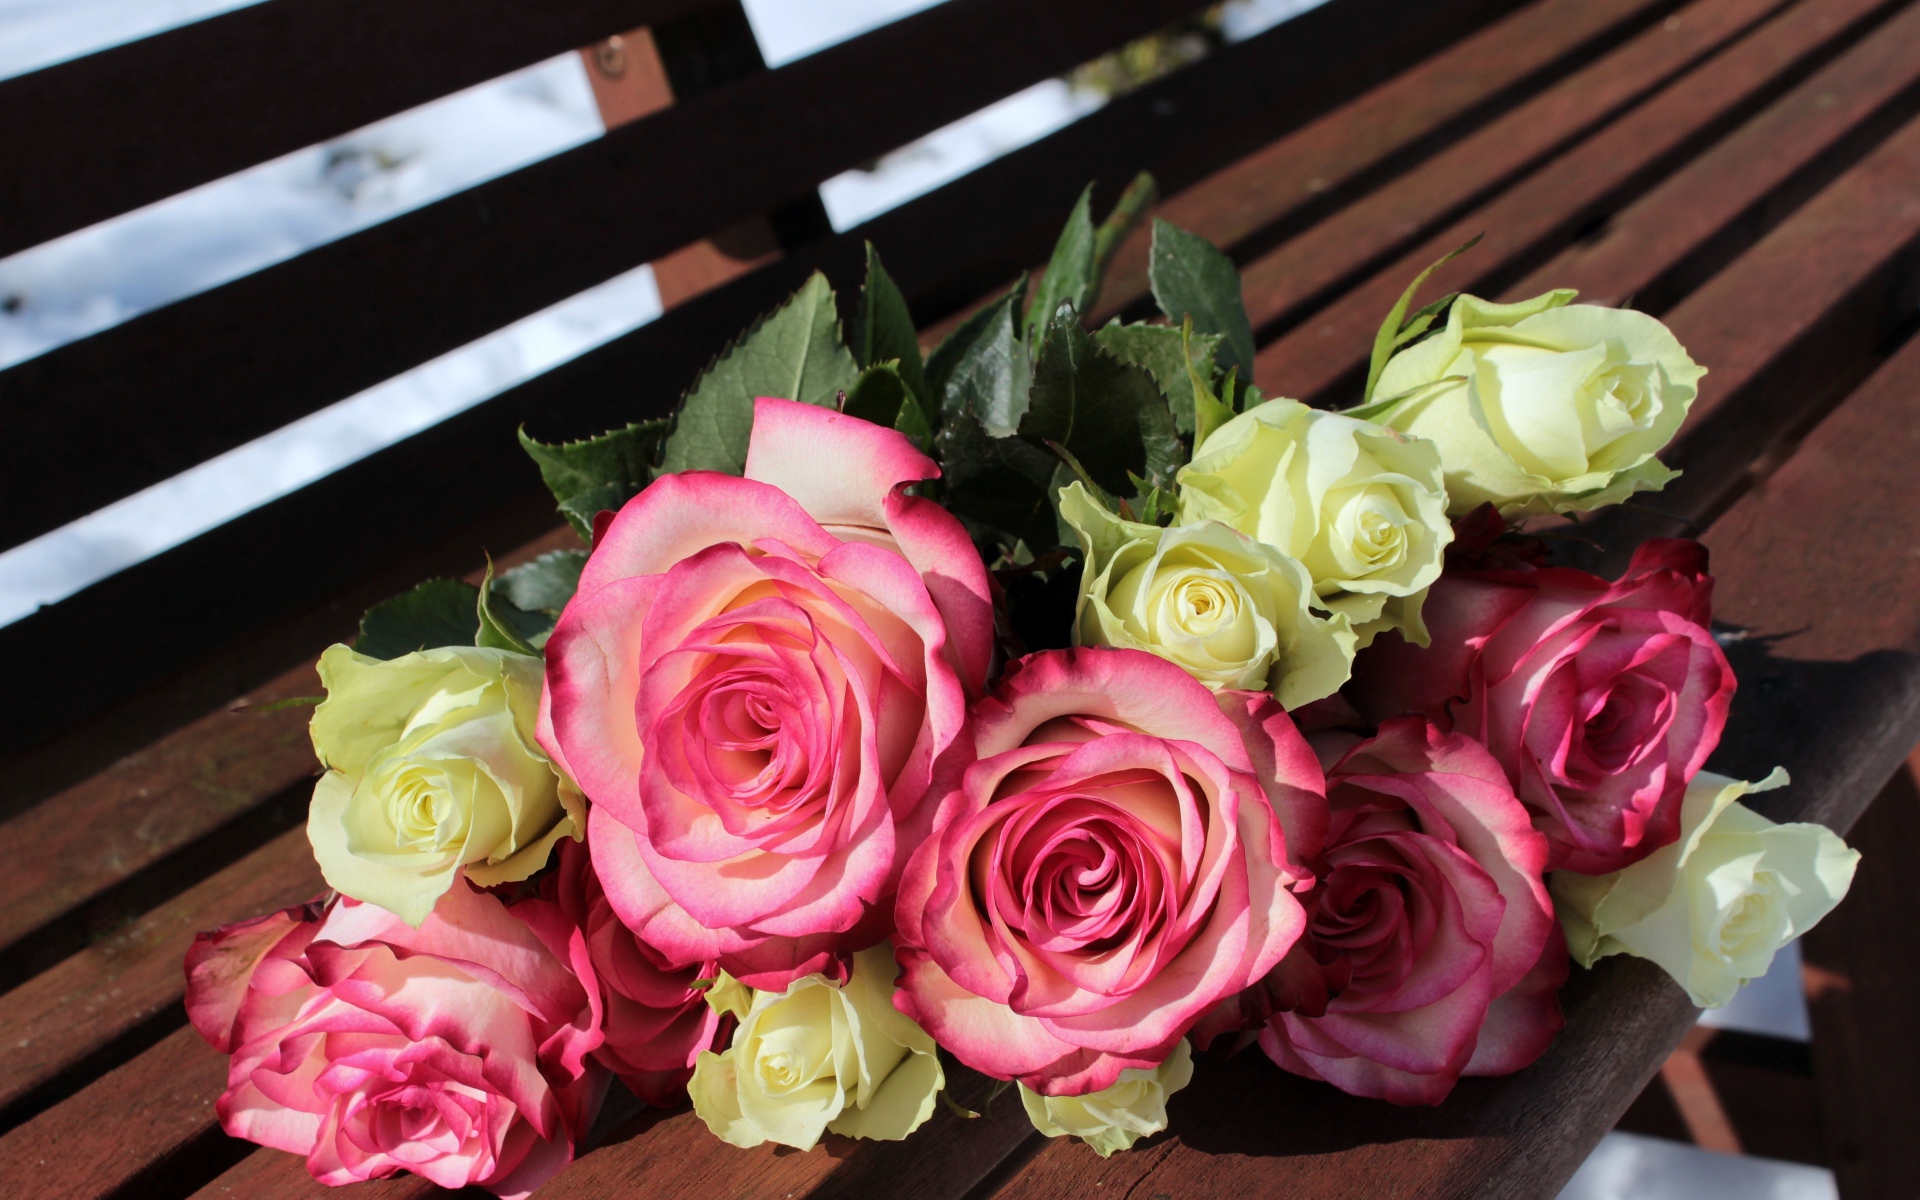 Букет розовых и белых роз лежит на лавке в парке